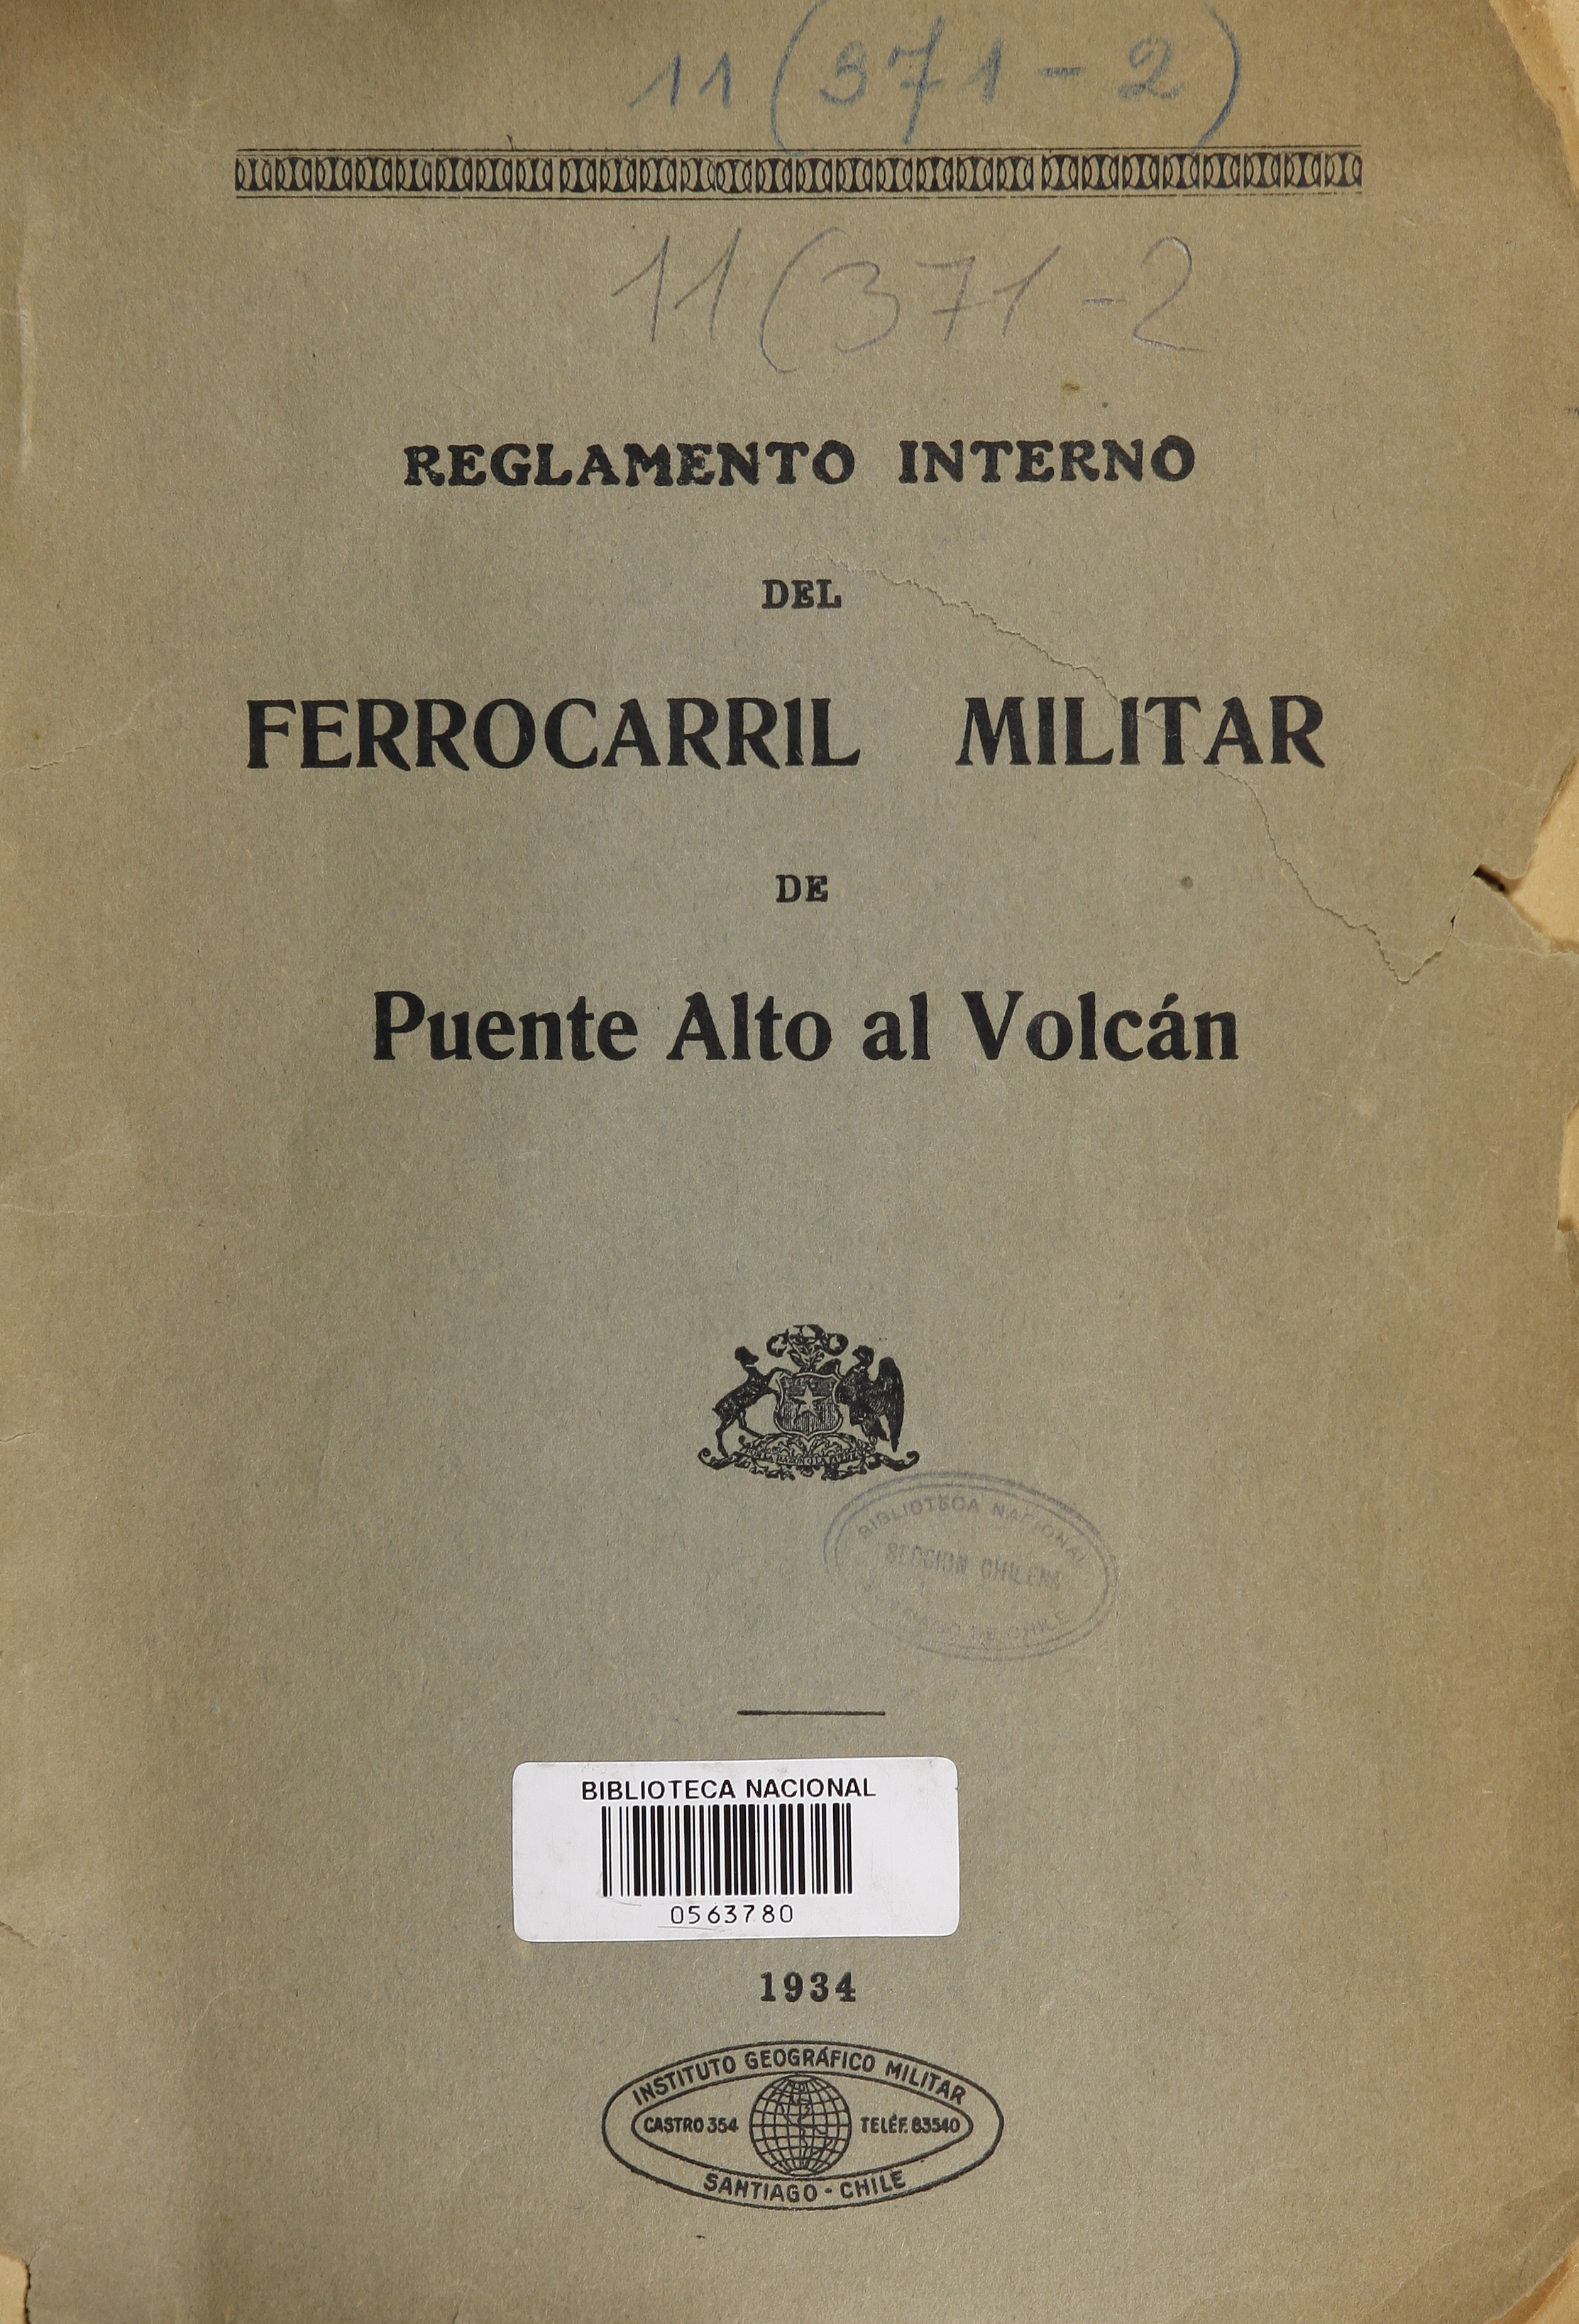 Reglamento Interno del Ferrocarril Militar de Puente Alto al Volcán